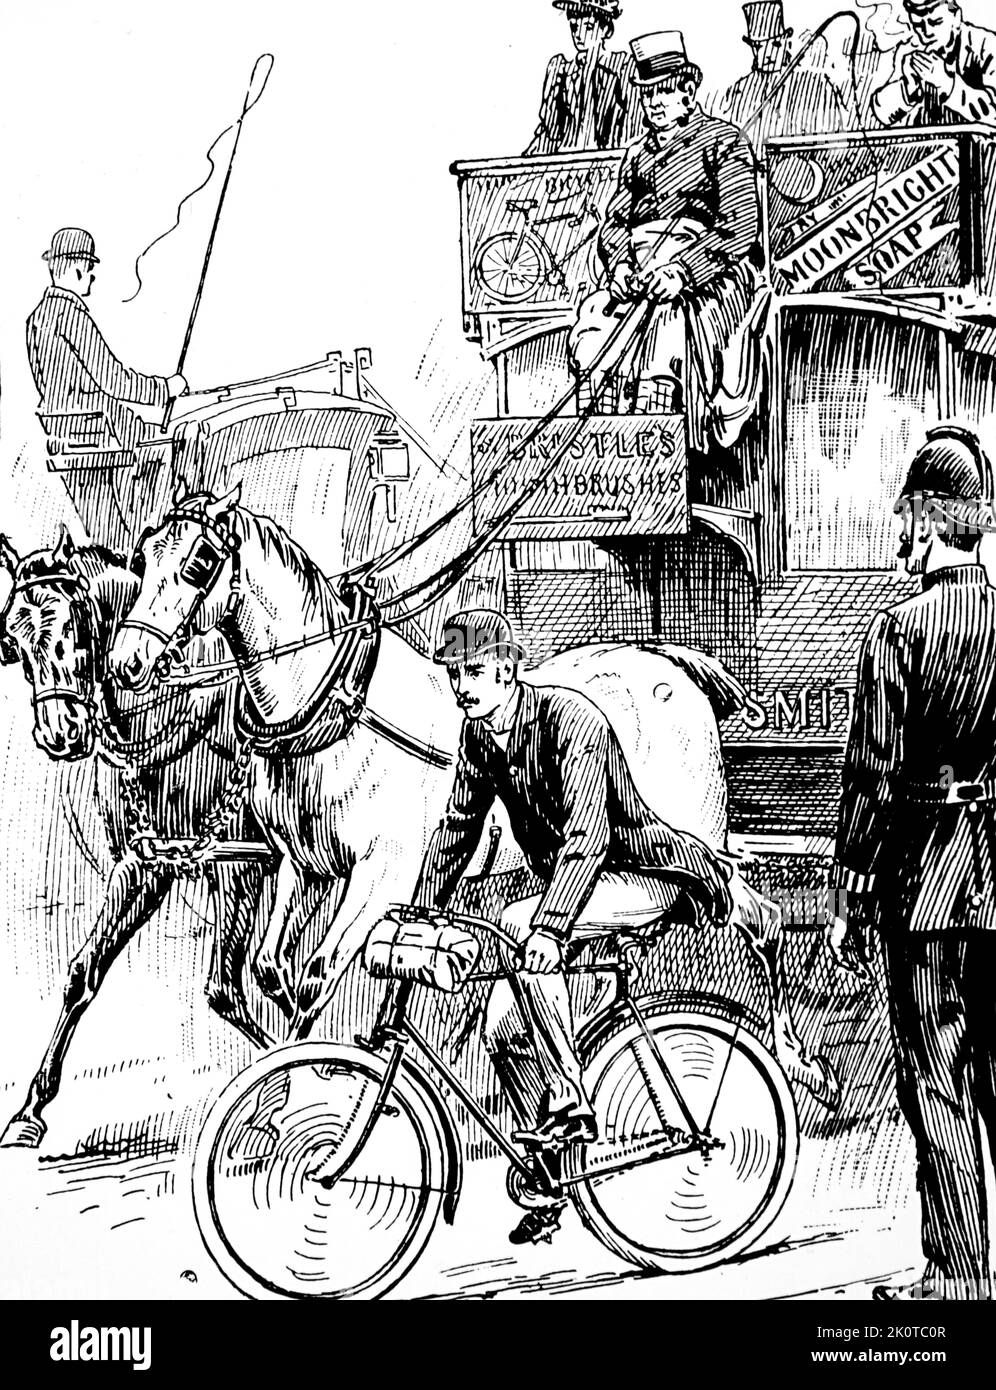 Illustration représentant un cycliste dans un trafic londonien très fréquenté. L'homme roule sur une machine de type sécurité Rover. Illustré par Stephen Thomas Dadd (1879-1914) un artiste anglais. Daté du 19th siècle Banque D'Images